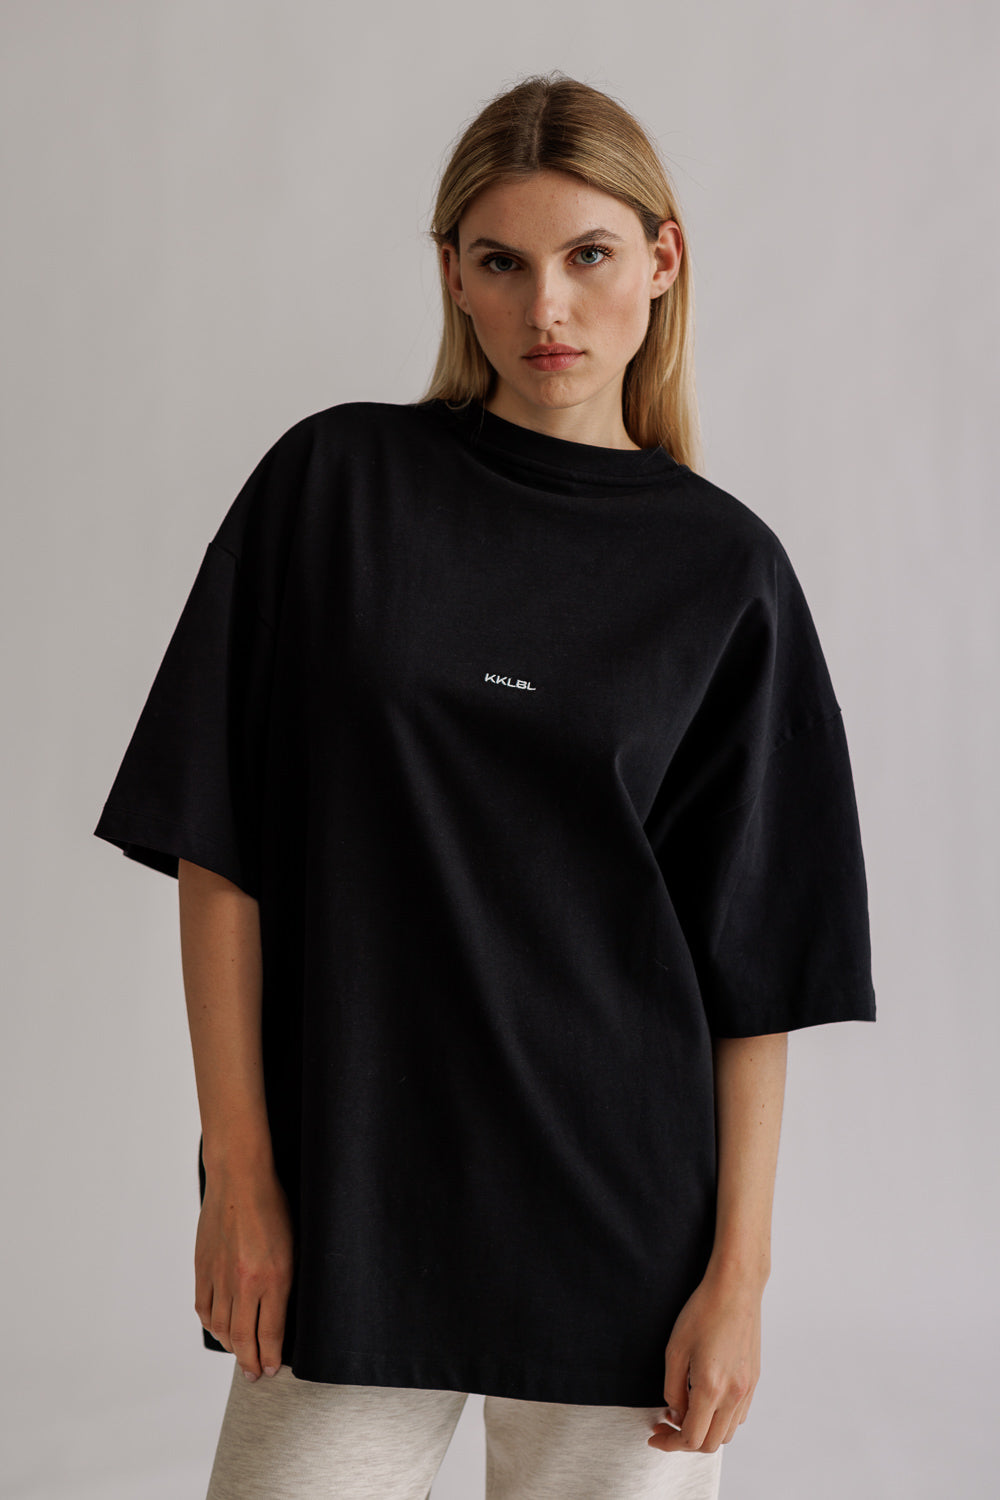 T-Shirt Basic Black – Karo Kauer Label